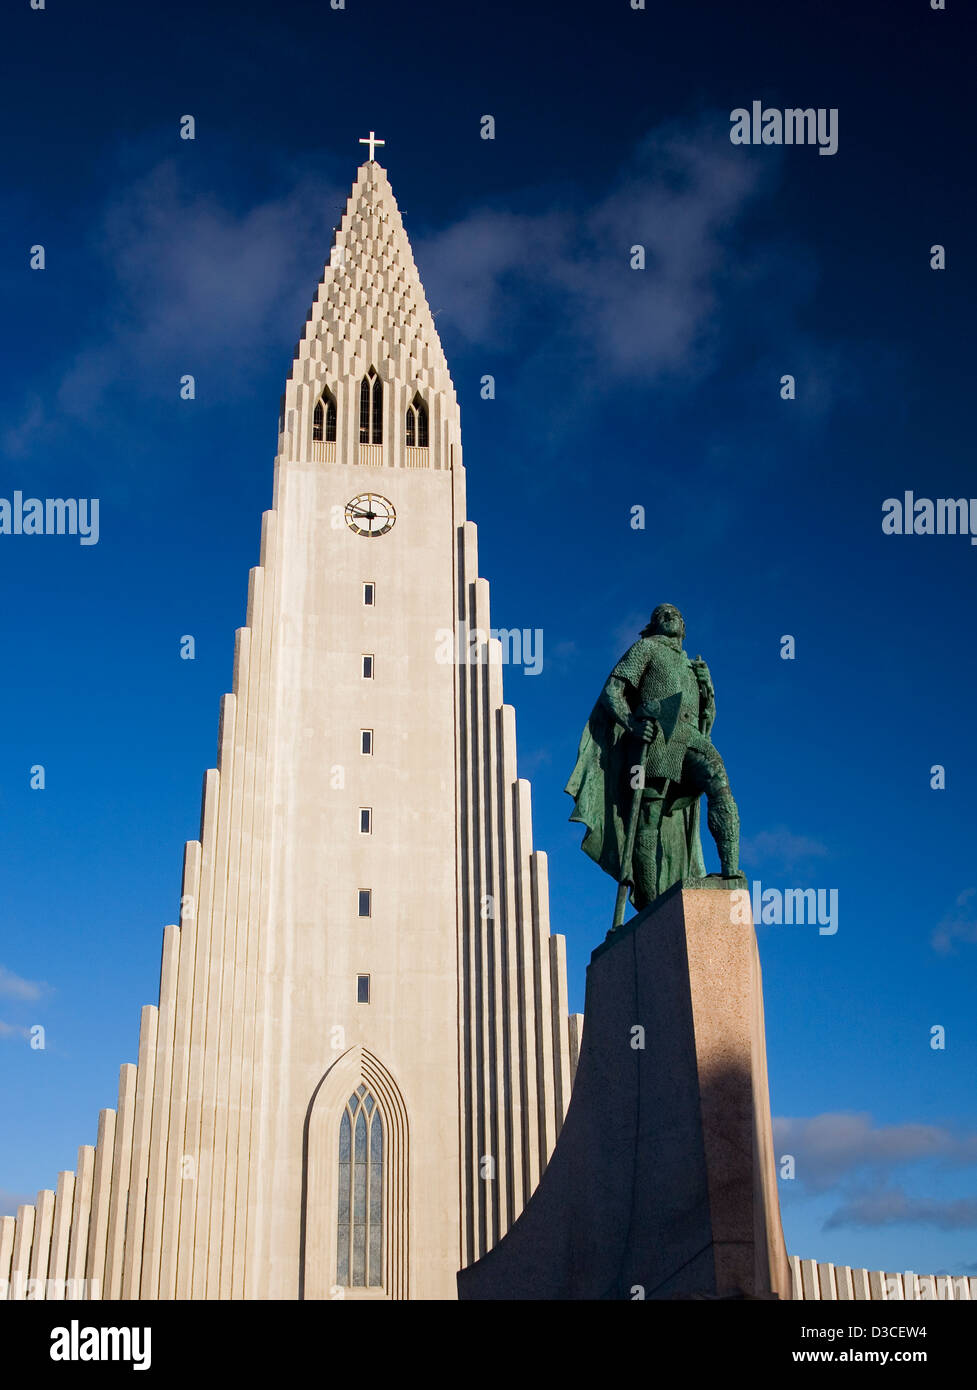 Hallgrimskirkja Church With Statue Of Leifer Eiriksson By Sculptor Alexander Calder In Foreground, Reykjavik, Iceland Stock Photo